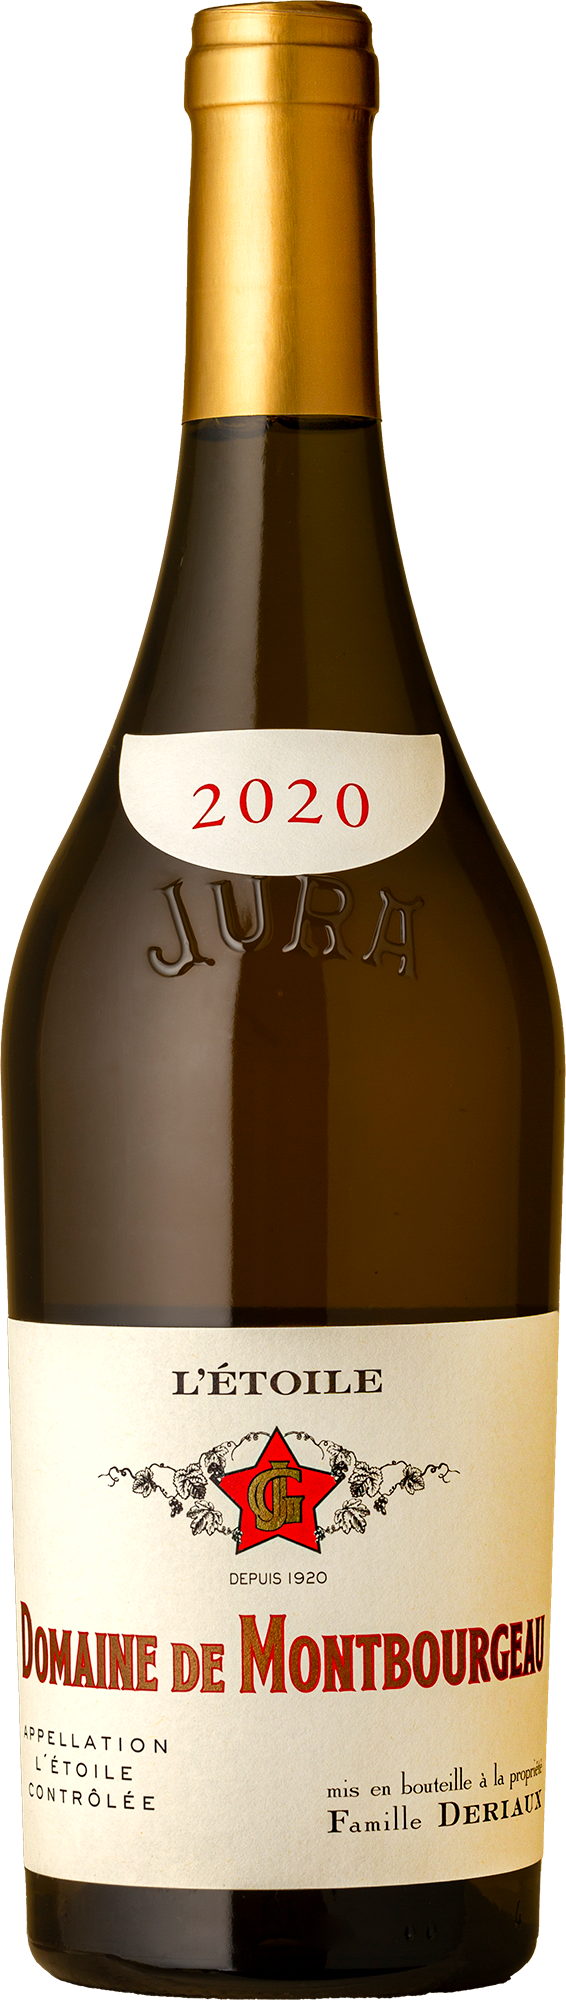 Domaine de Monbourgeau - L’Etoile Vin Blanc Chardonnay 2020